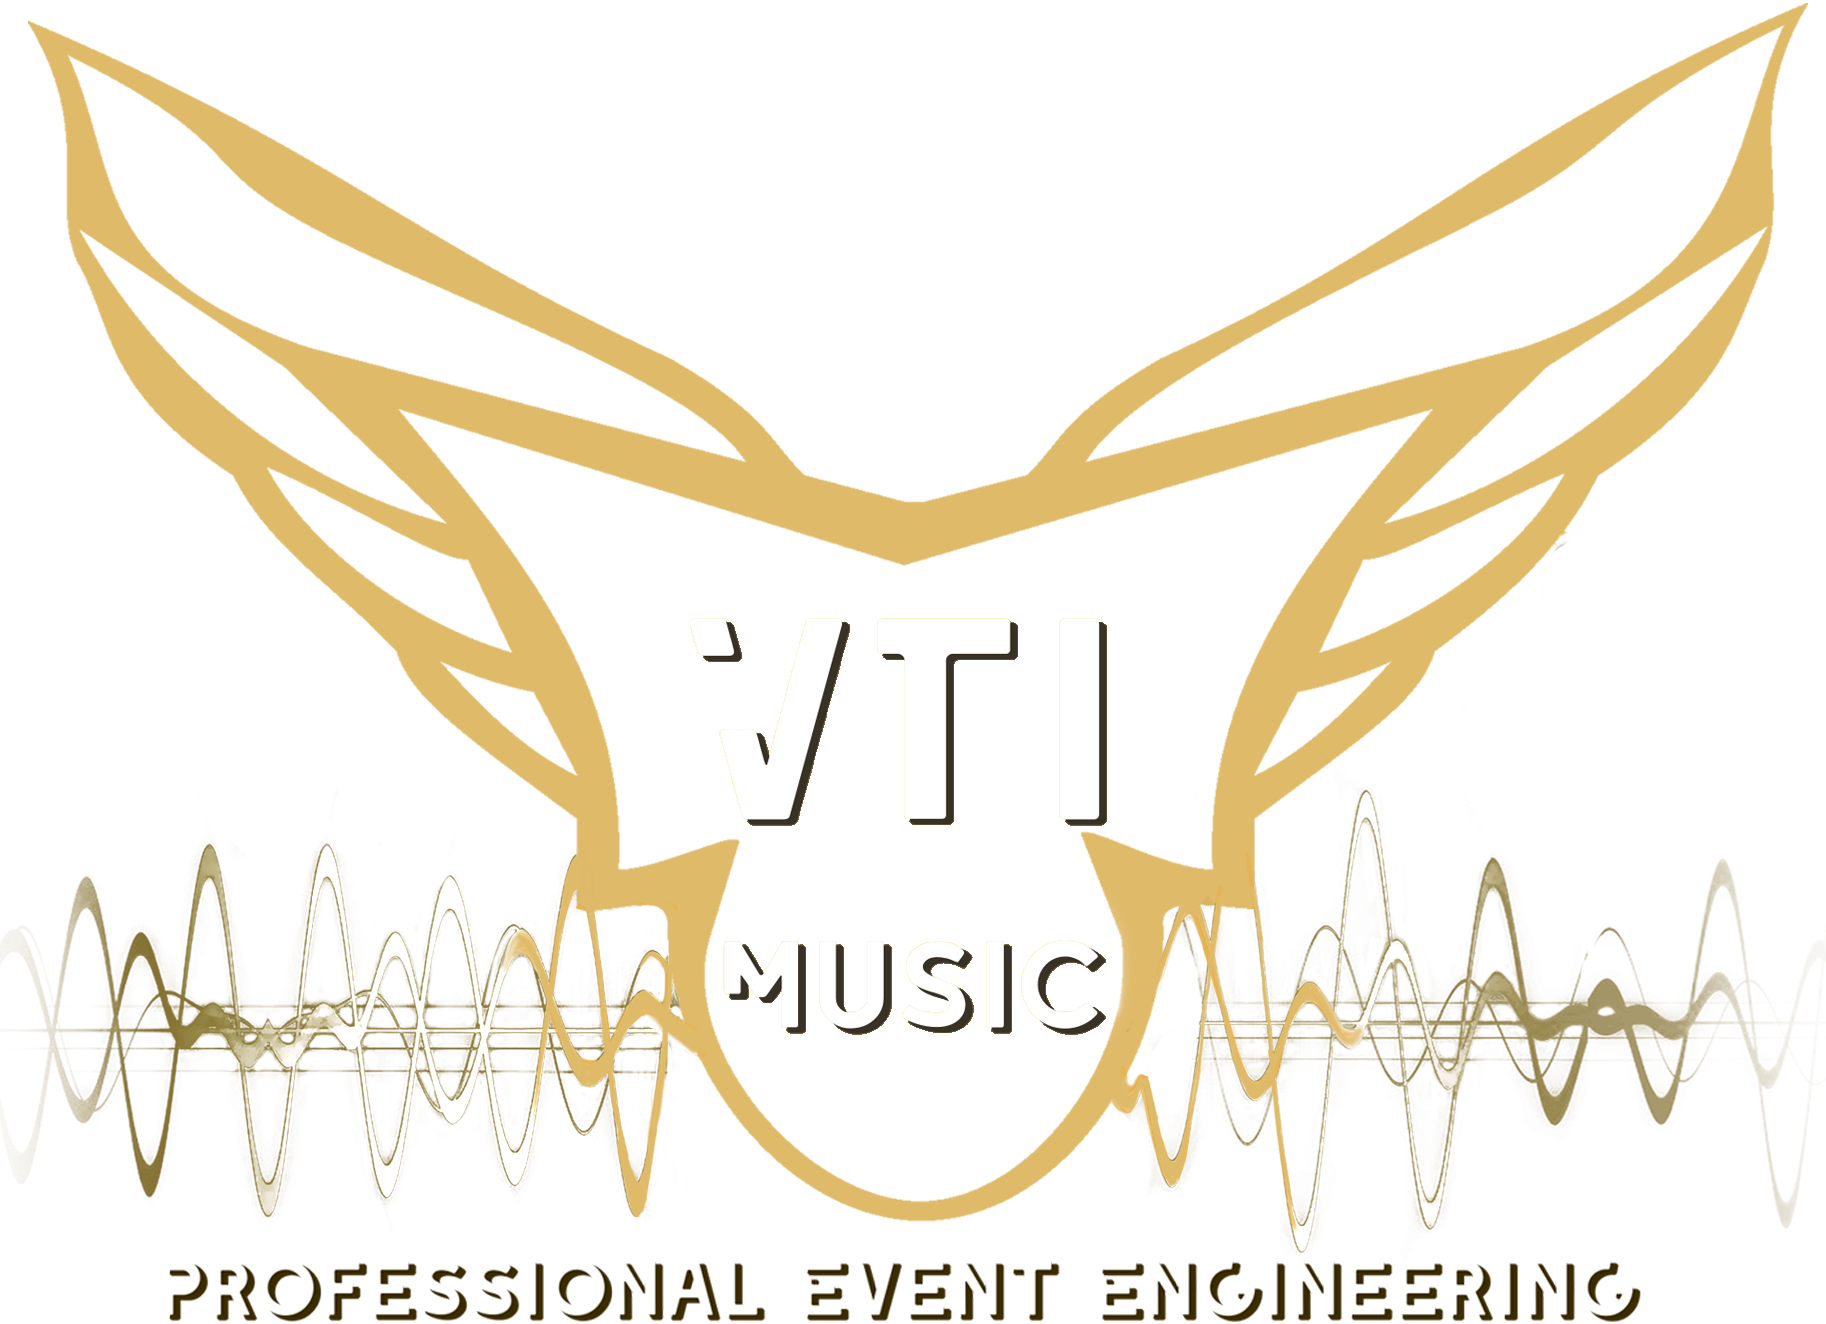 VTi Music